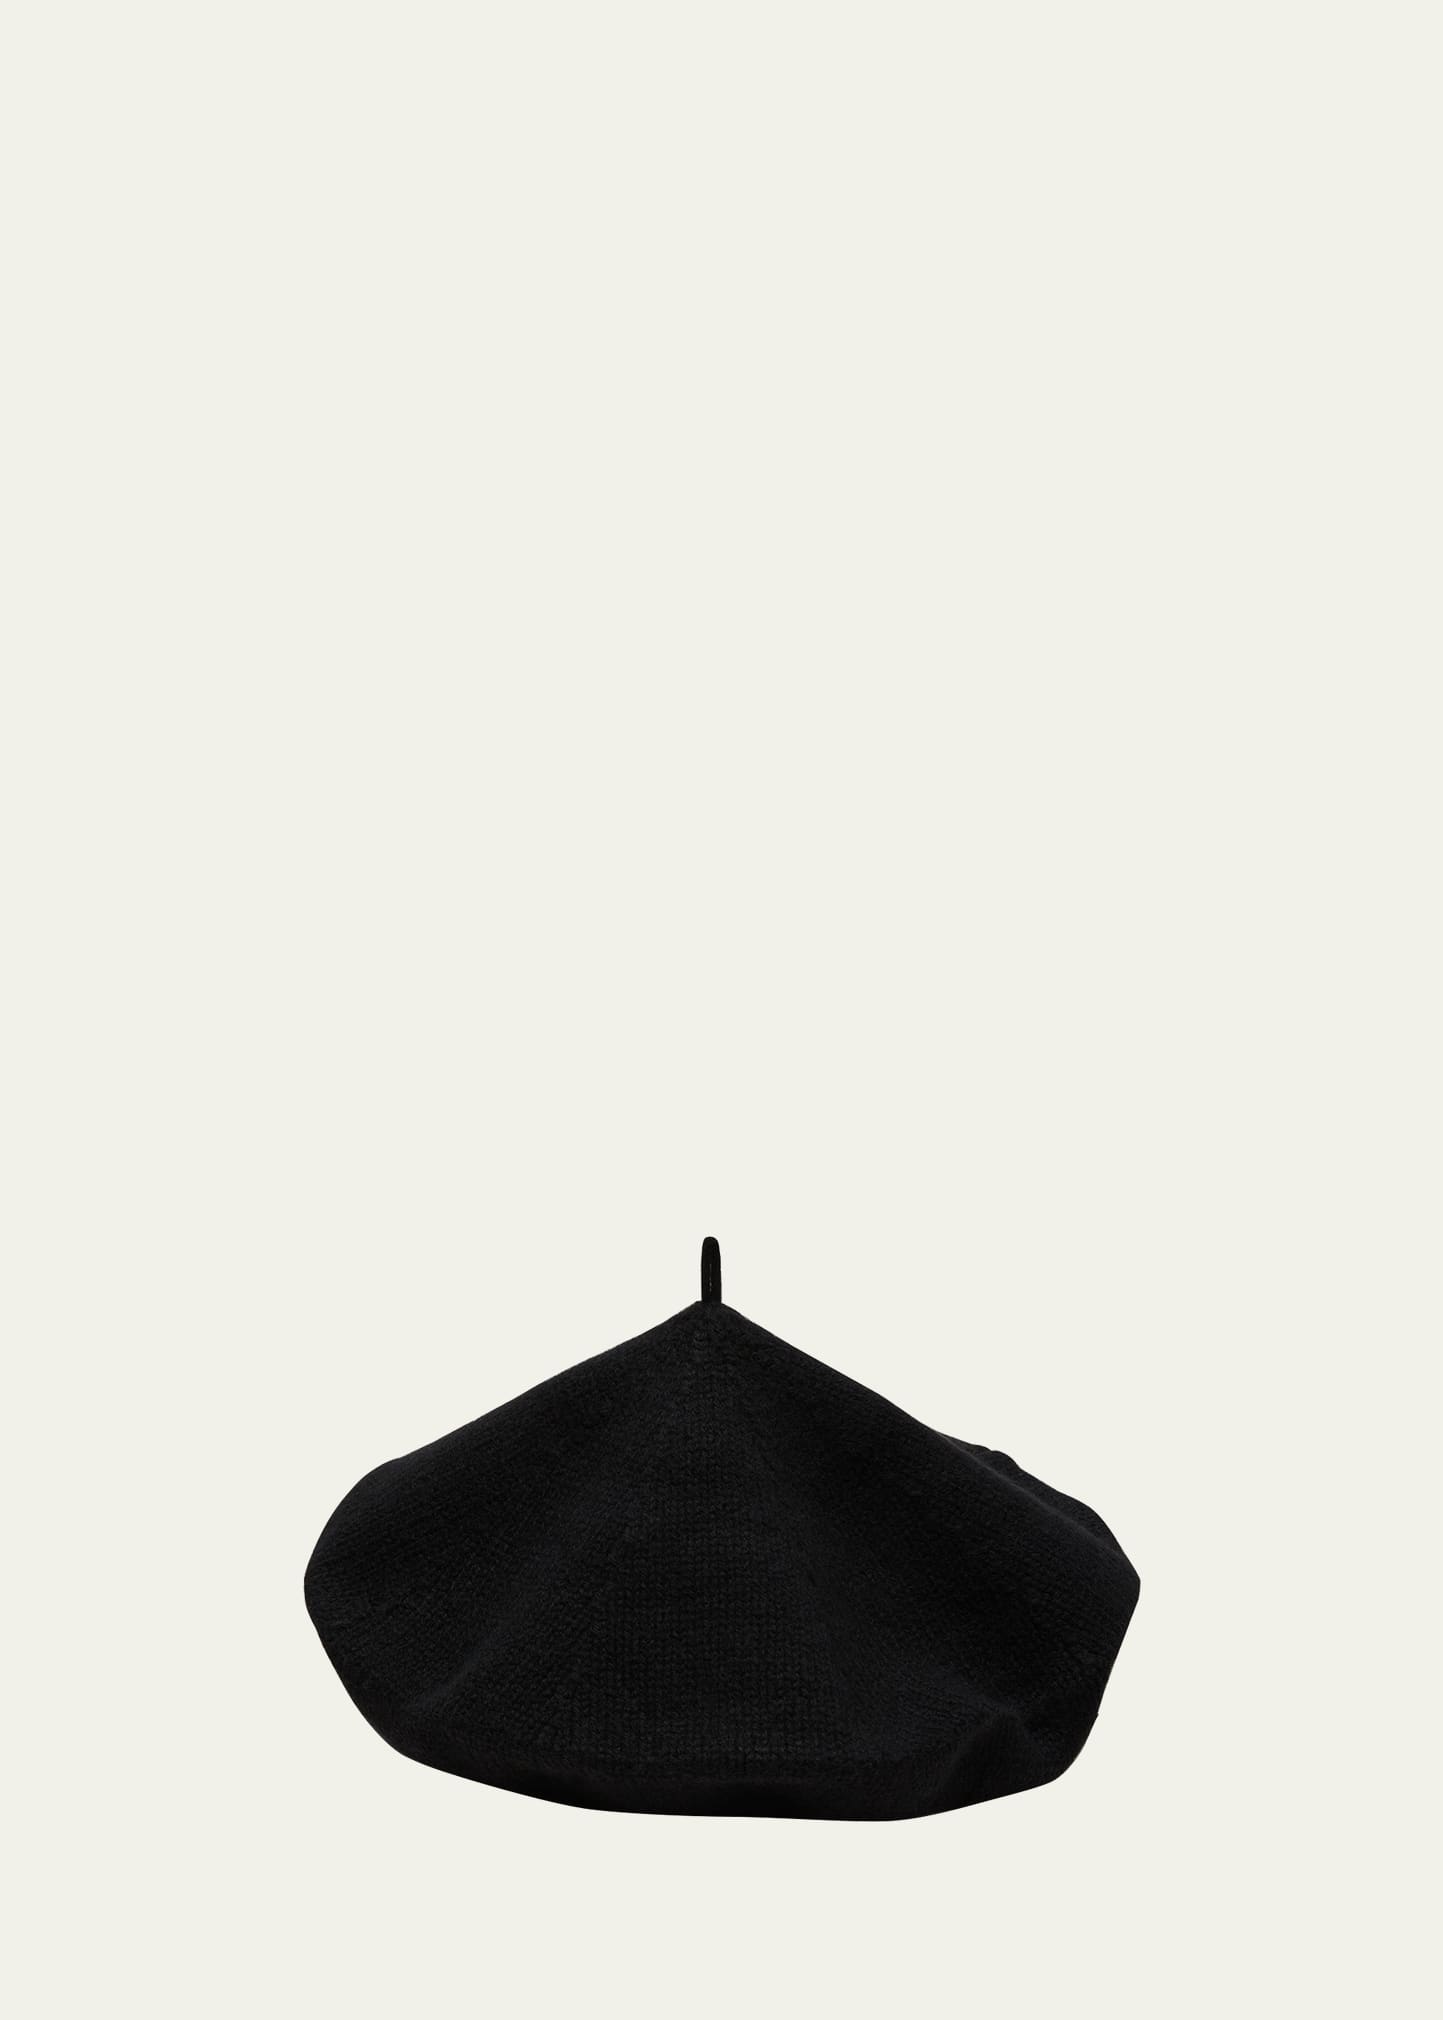 Lisa Yang Saint Germain Knit Beret In Black